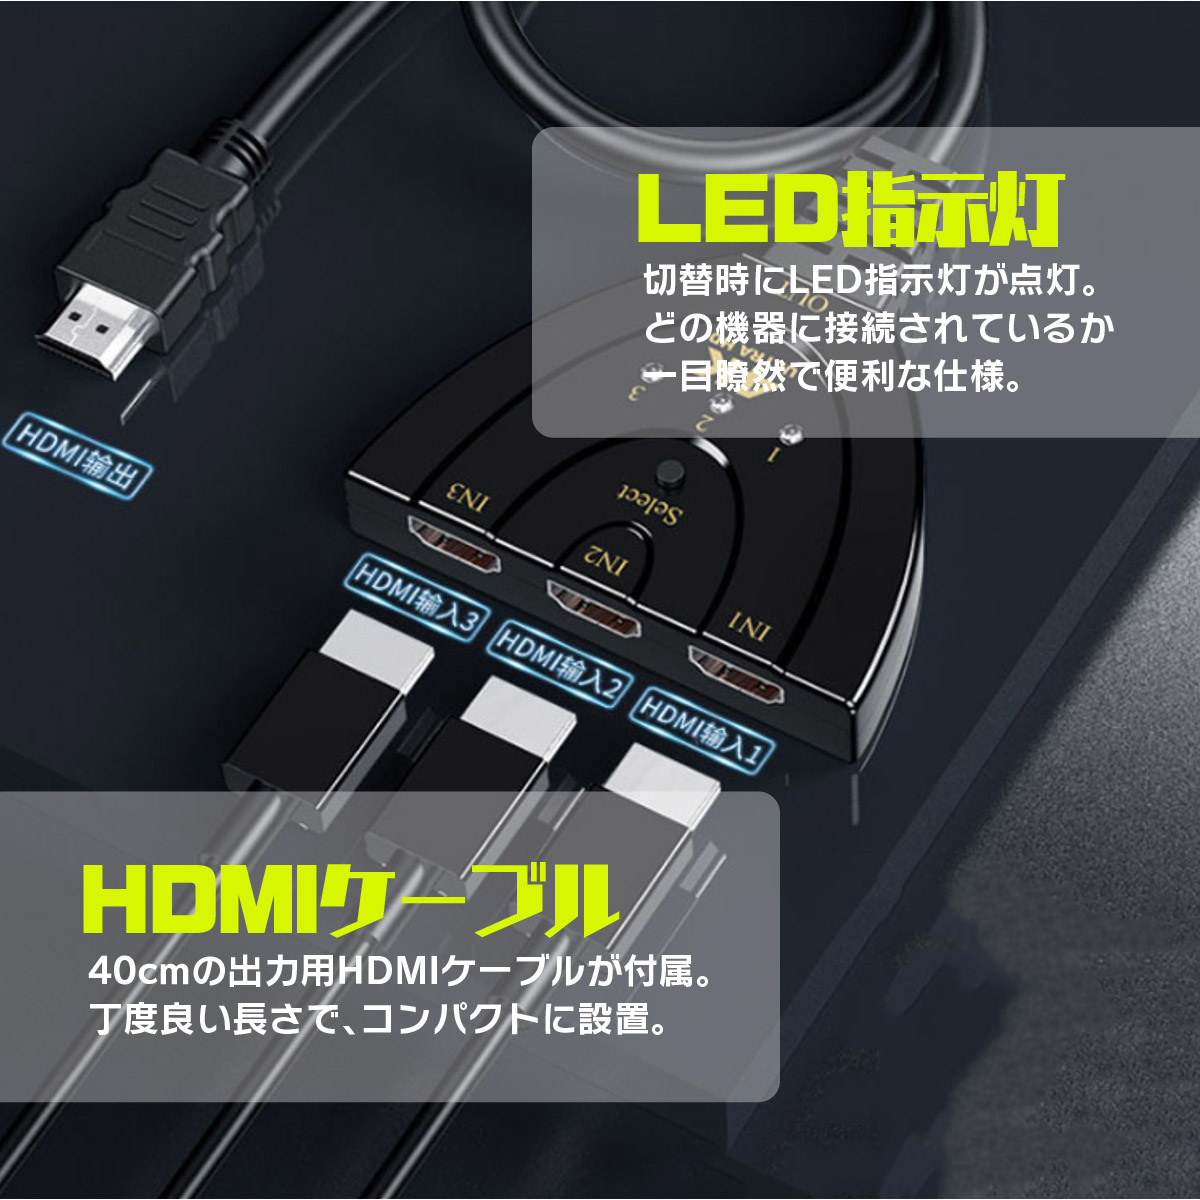 HDMI дистрибьютор переключатель изменение селектор переключатель адаптор дисплей несколько 3 ввод 1 мощность женский - мужской повышение HDMI переключатель .- ТВ-монитор игра 